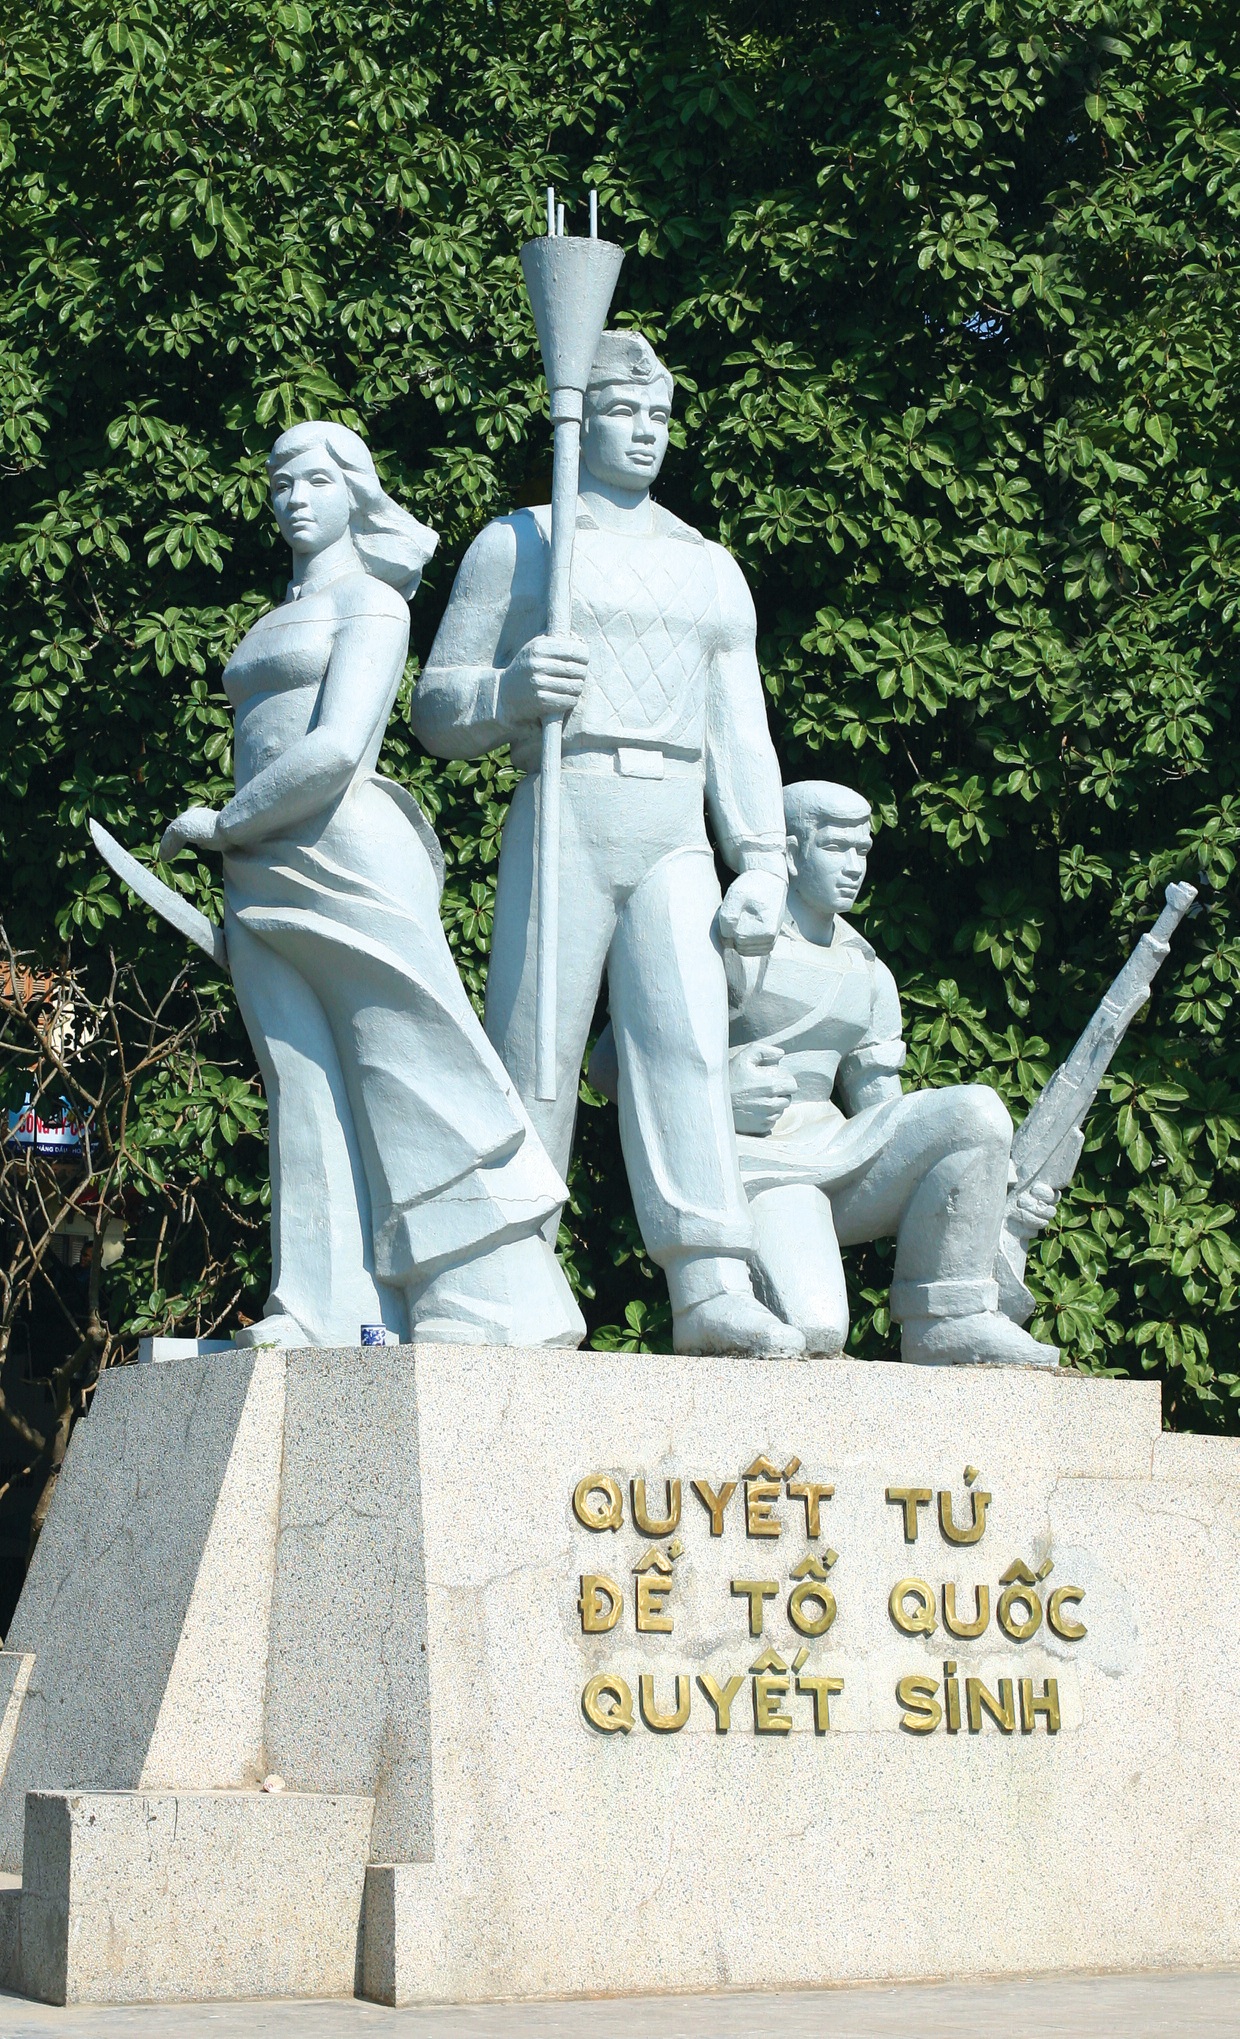 Tượng đài “Quyết tử để Tổ quốc quyết sinh” bên Hồ Hoàn Kiếm